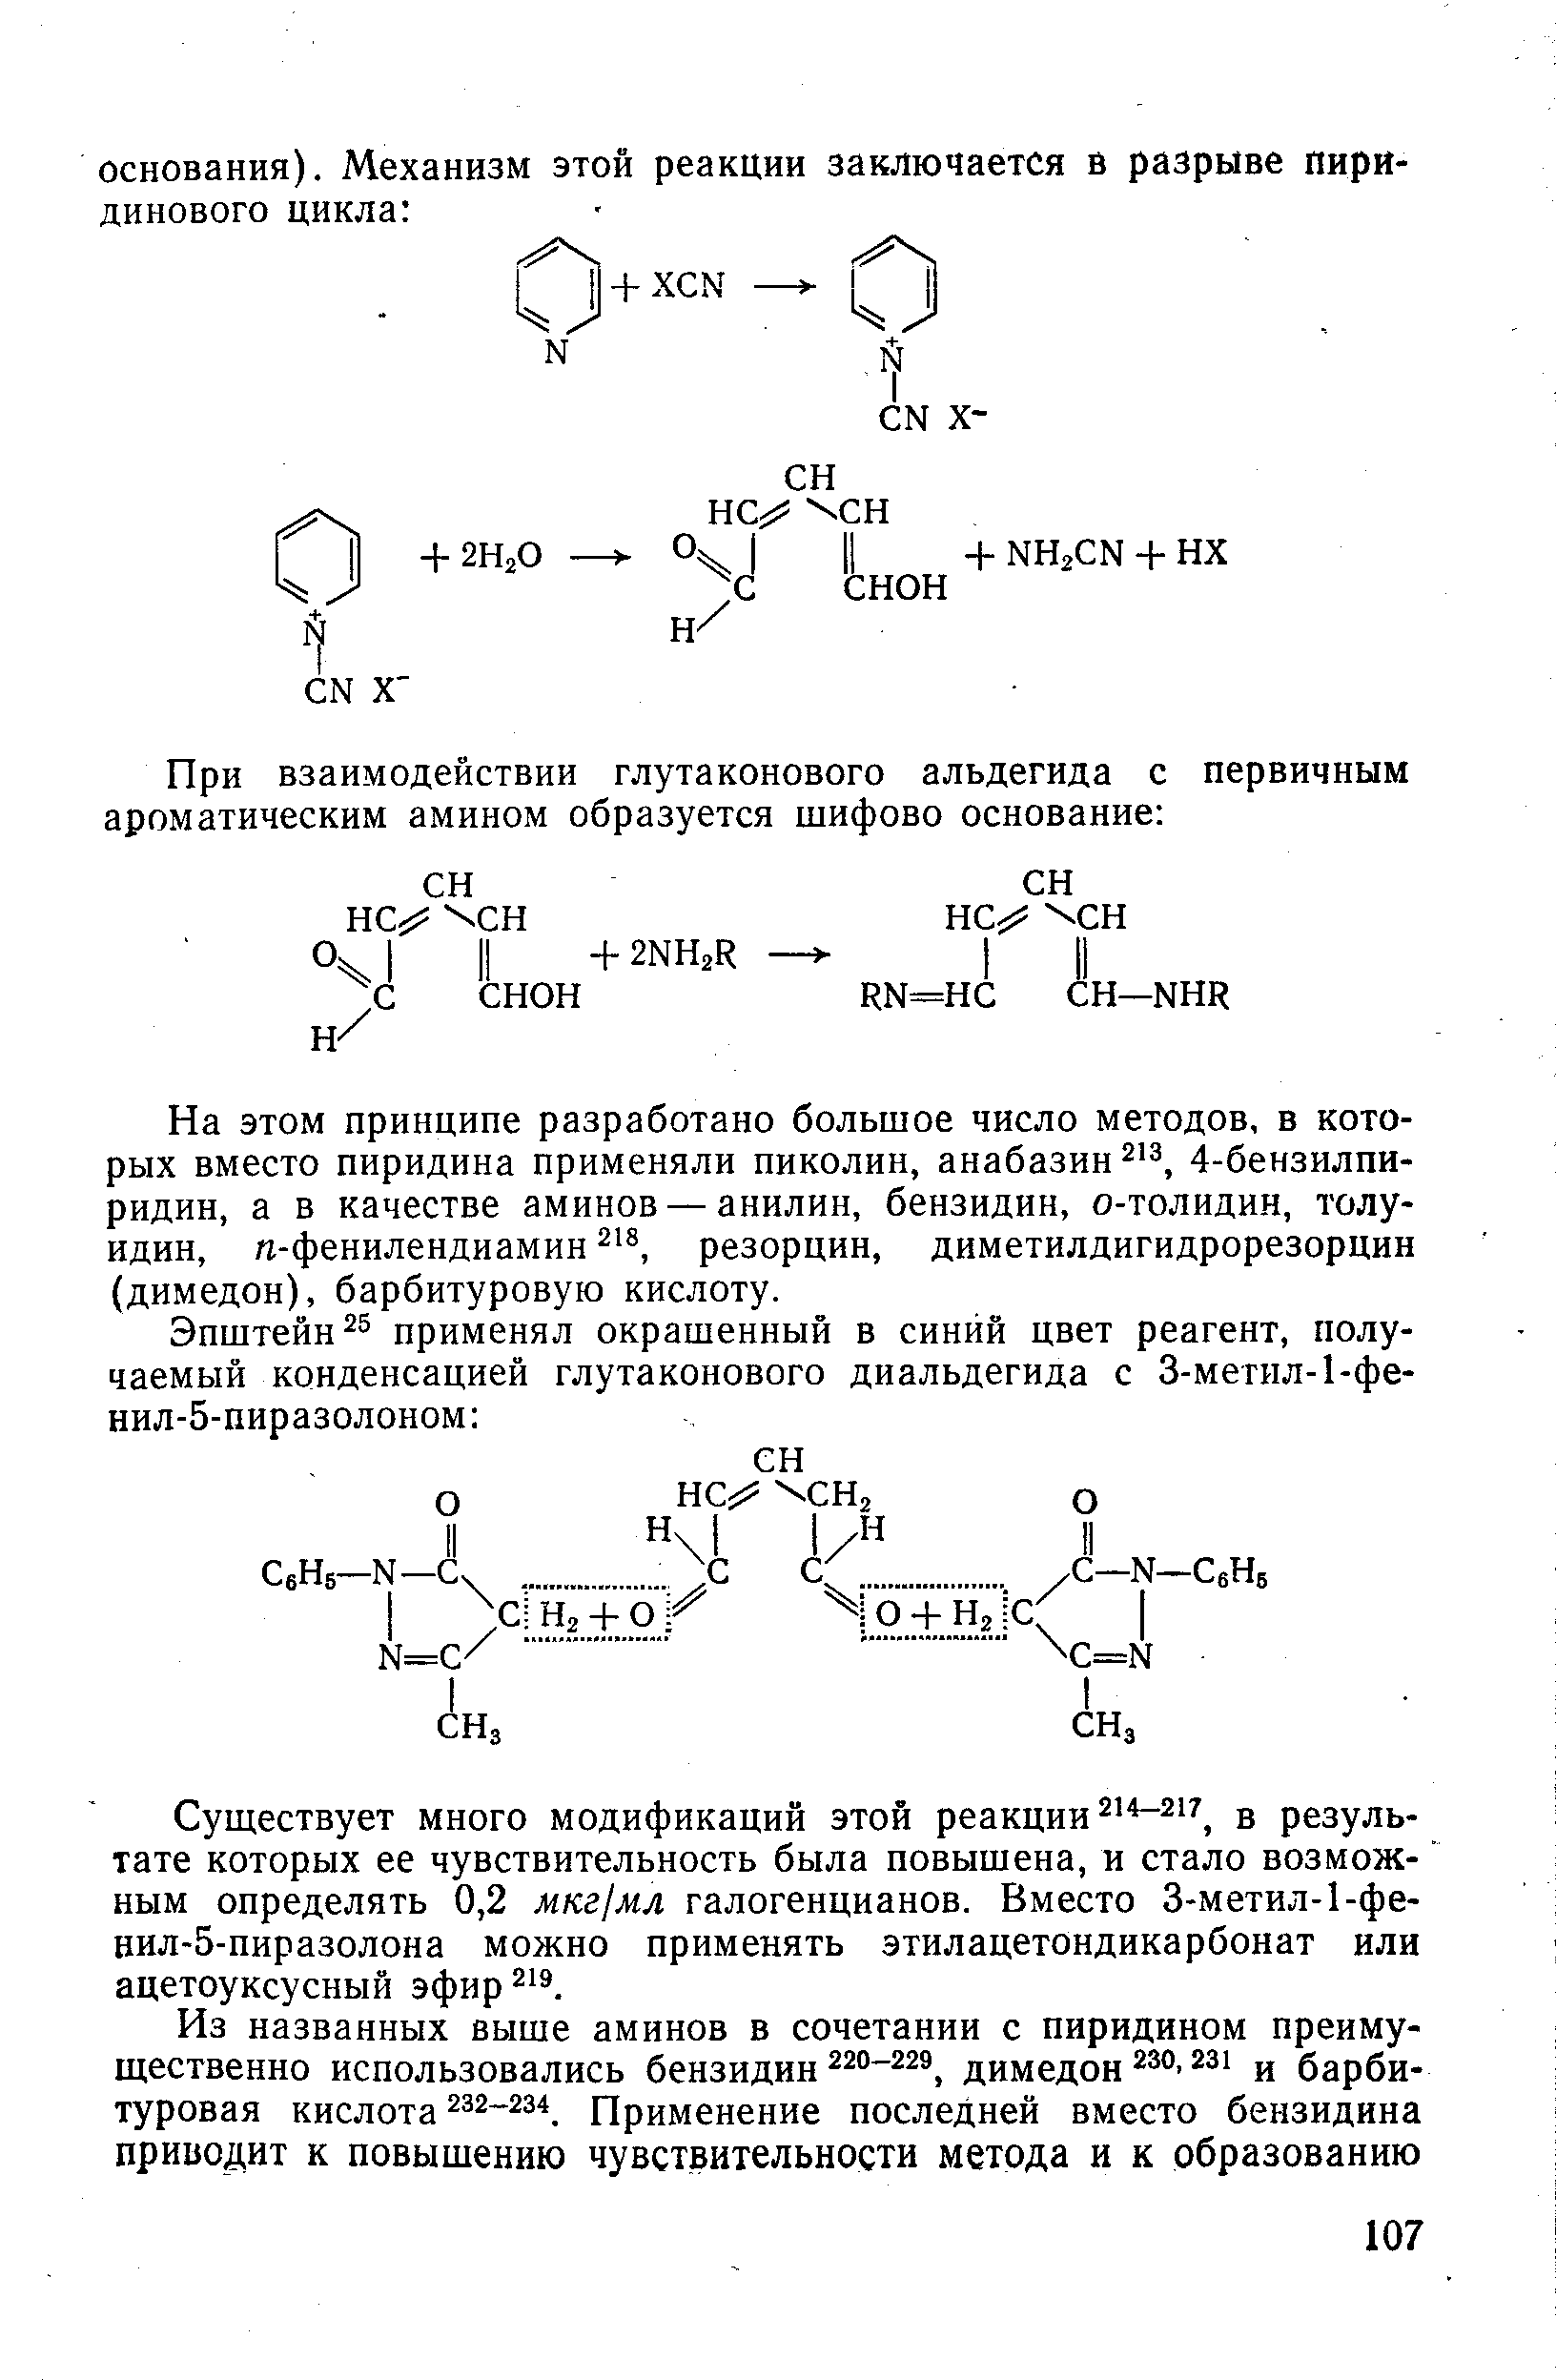 На этом принципе разработано большое число методов, в которых вместо пиридина применяли пиколин, анабазин 4-бензилпи-ридин, а в качестве аминов — анилин, бензидин, о-толидин, толуидин, л-фенилендиамин 8, резорцин, диметилдигидрорезорцин (димедон), барбитуровую кислоту.